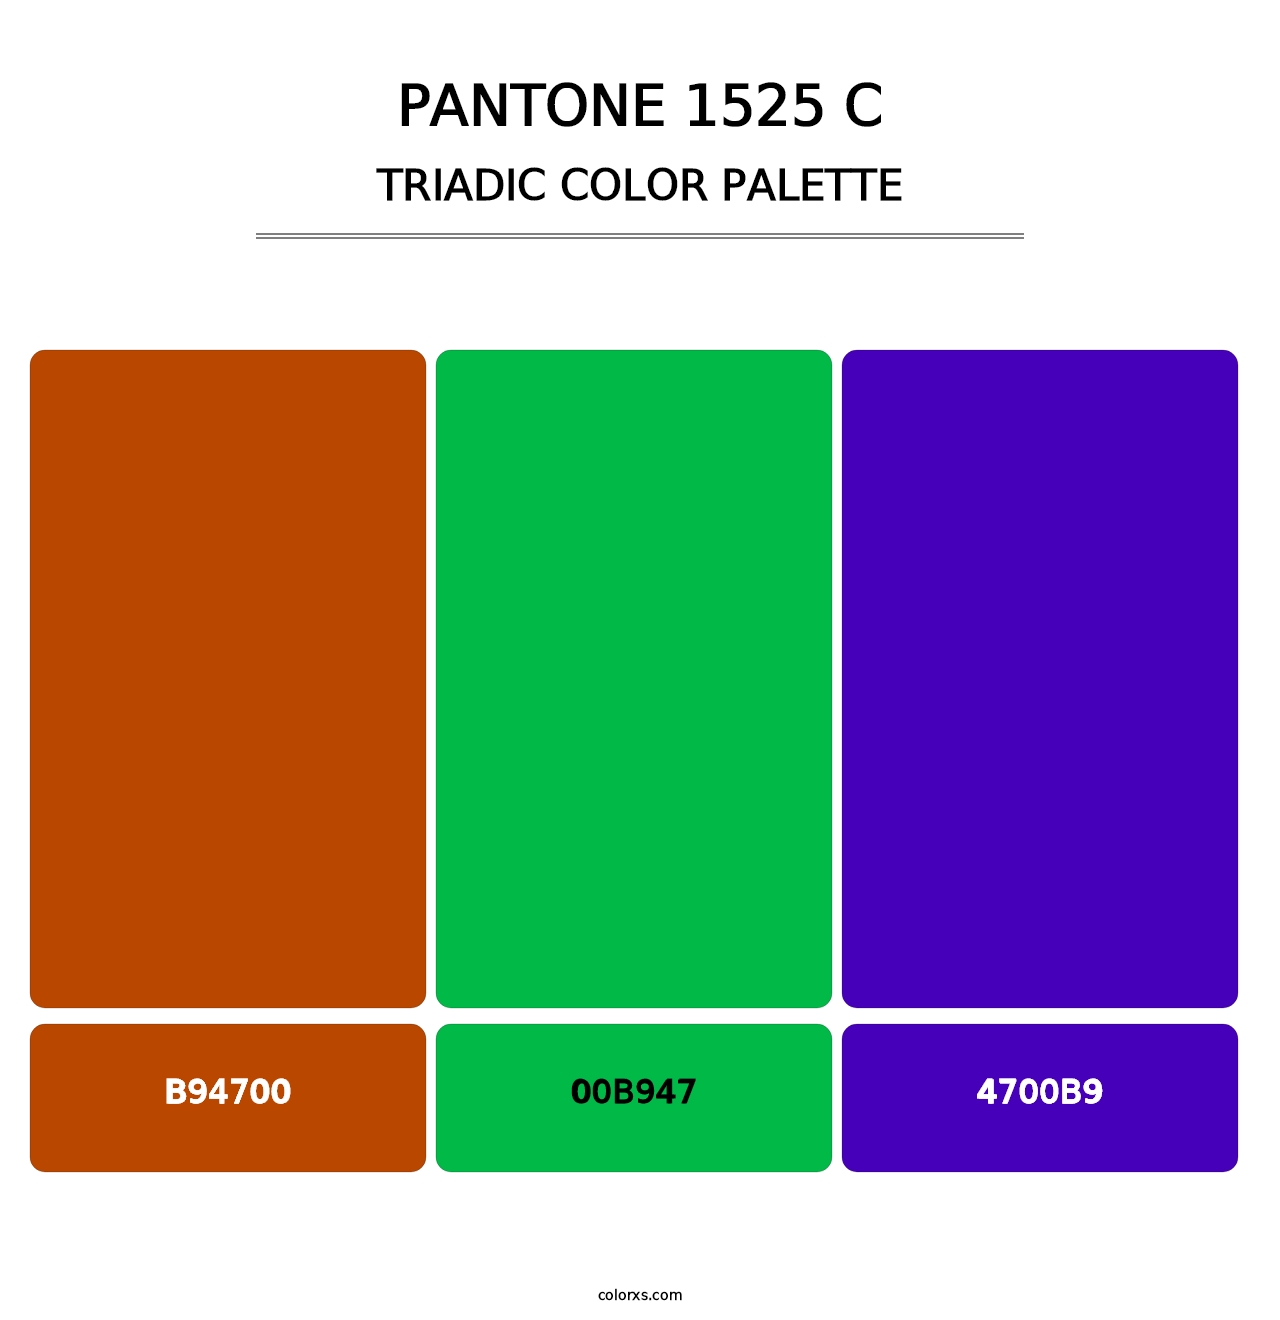 PANTONE 1525 C - Triadic Color Palette